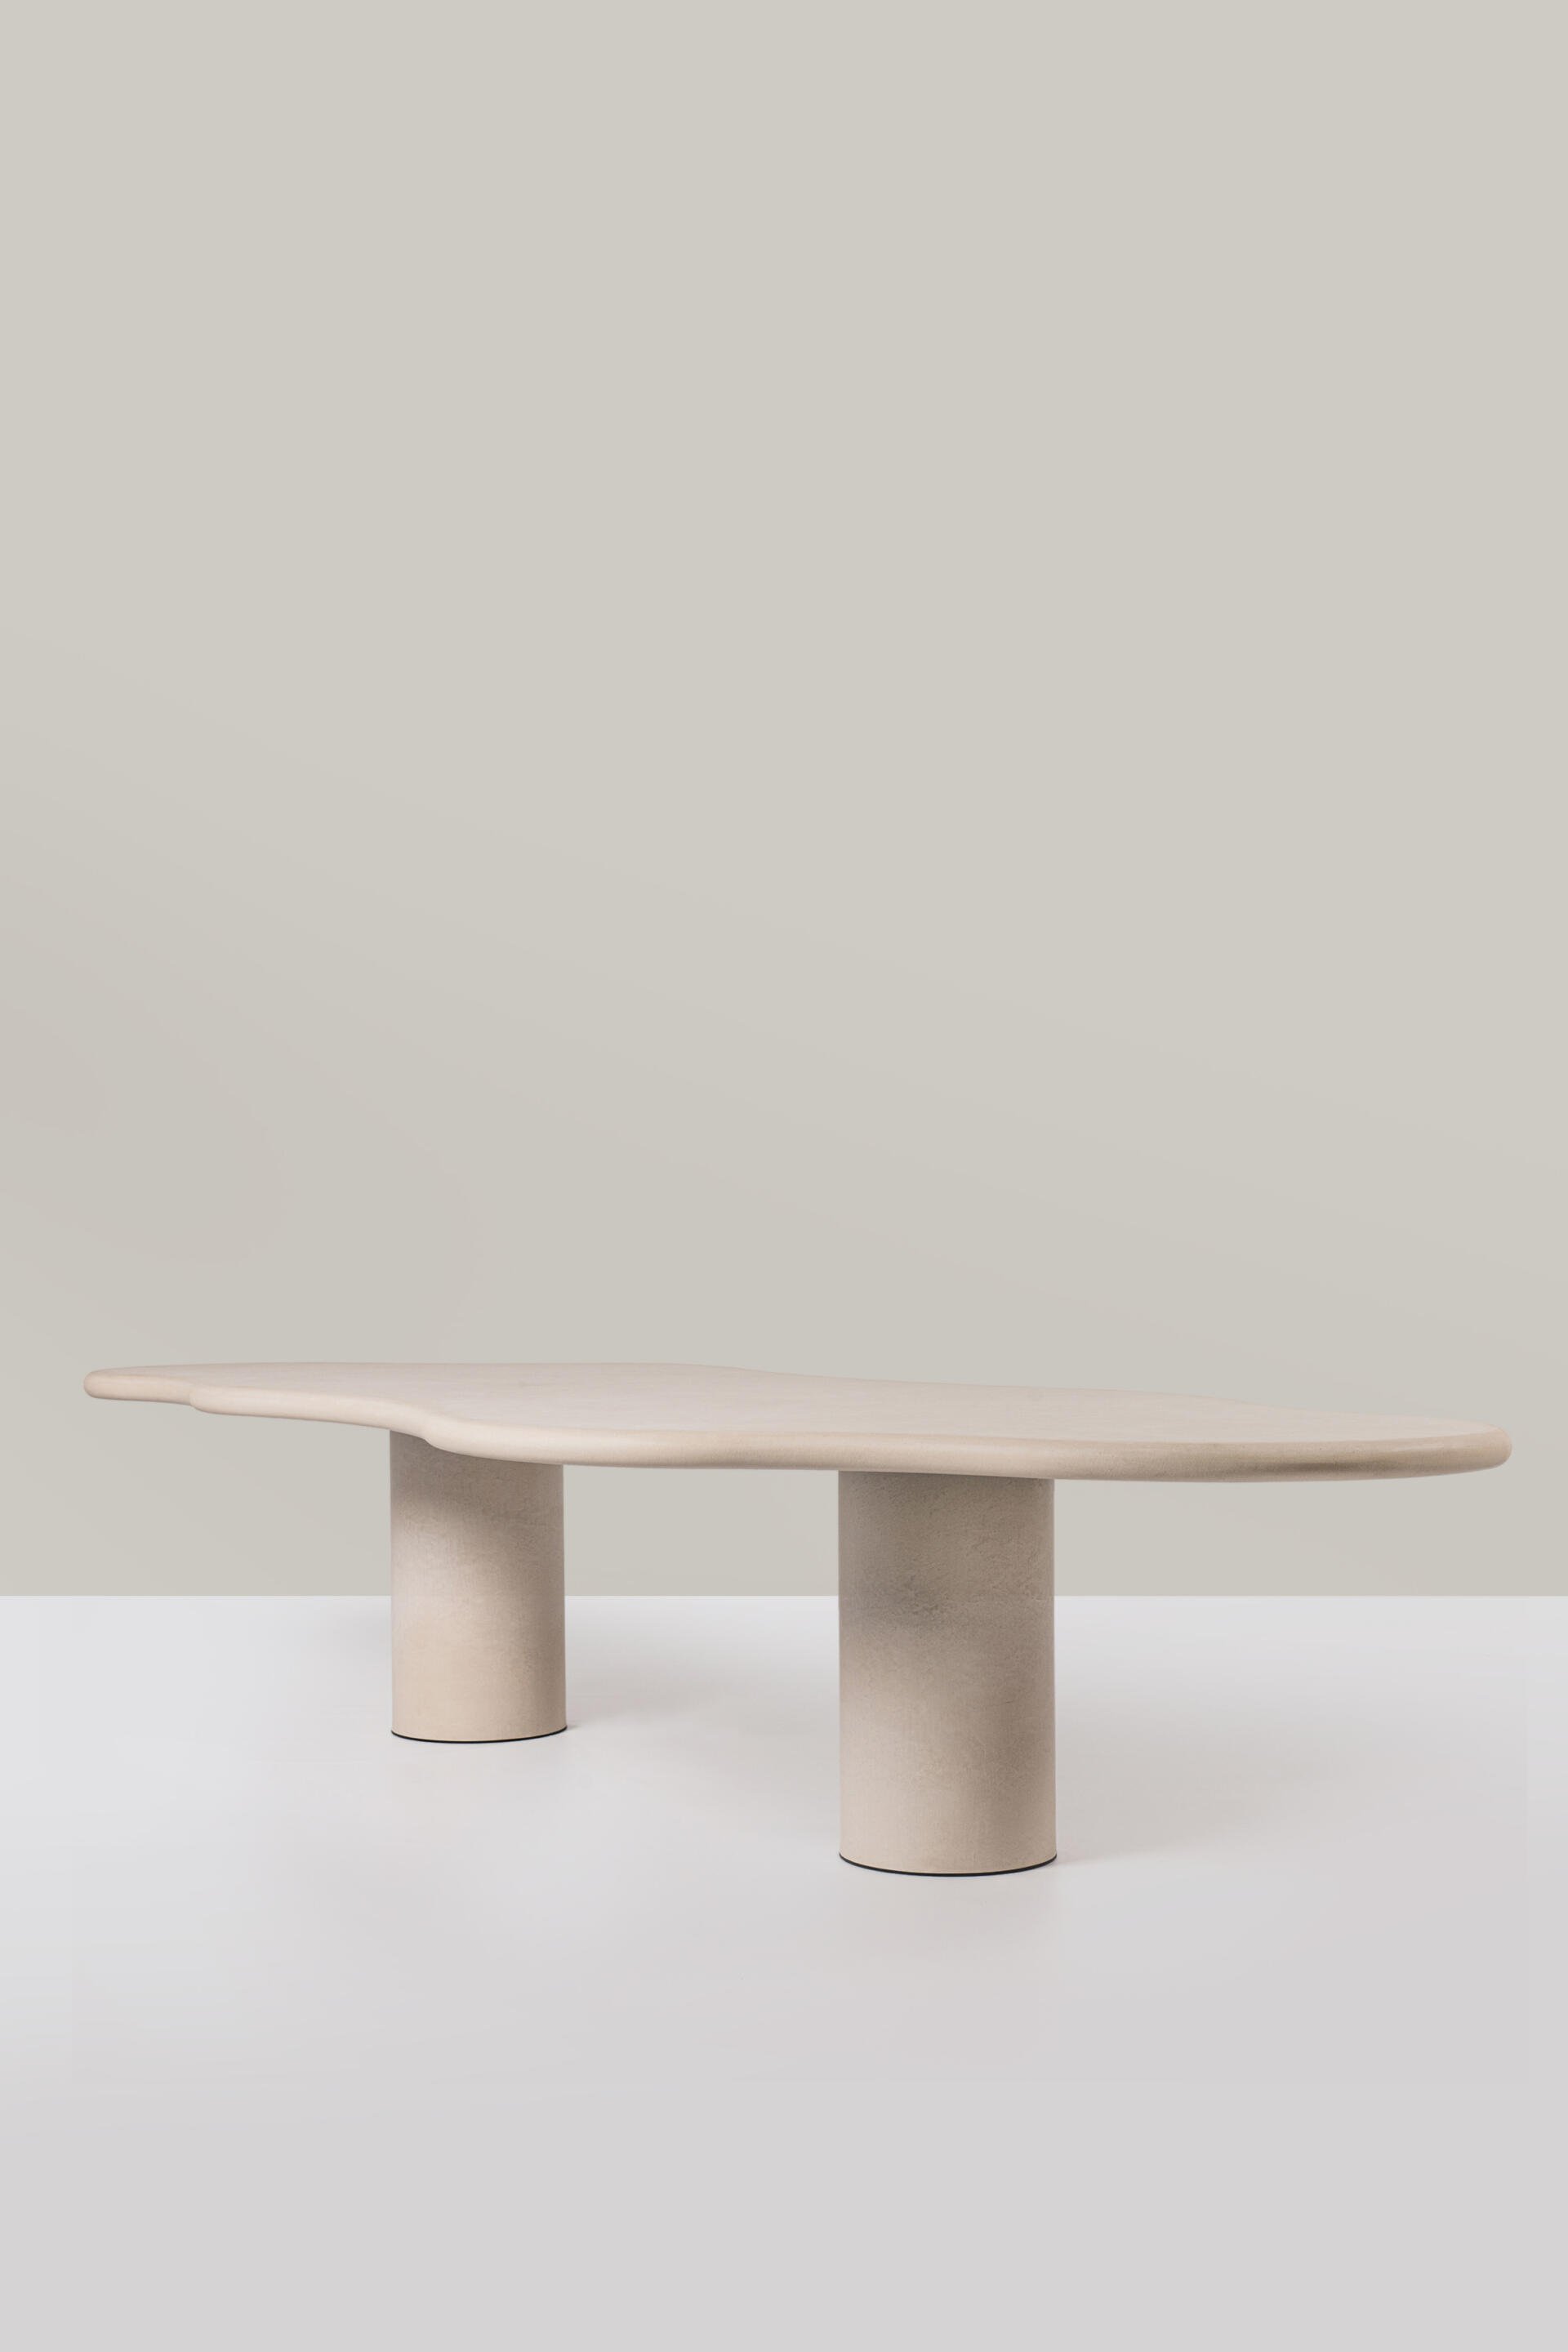 Bieke-Casteleyn-dining-table.jpg